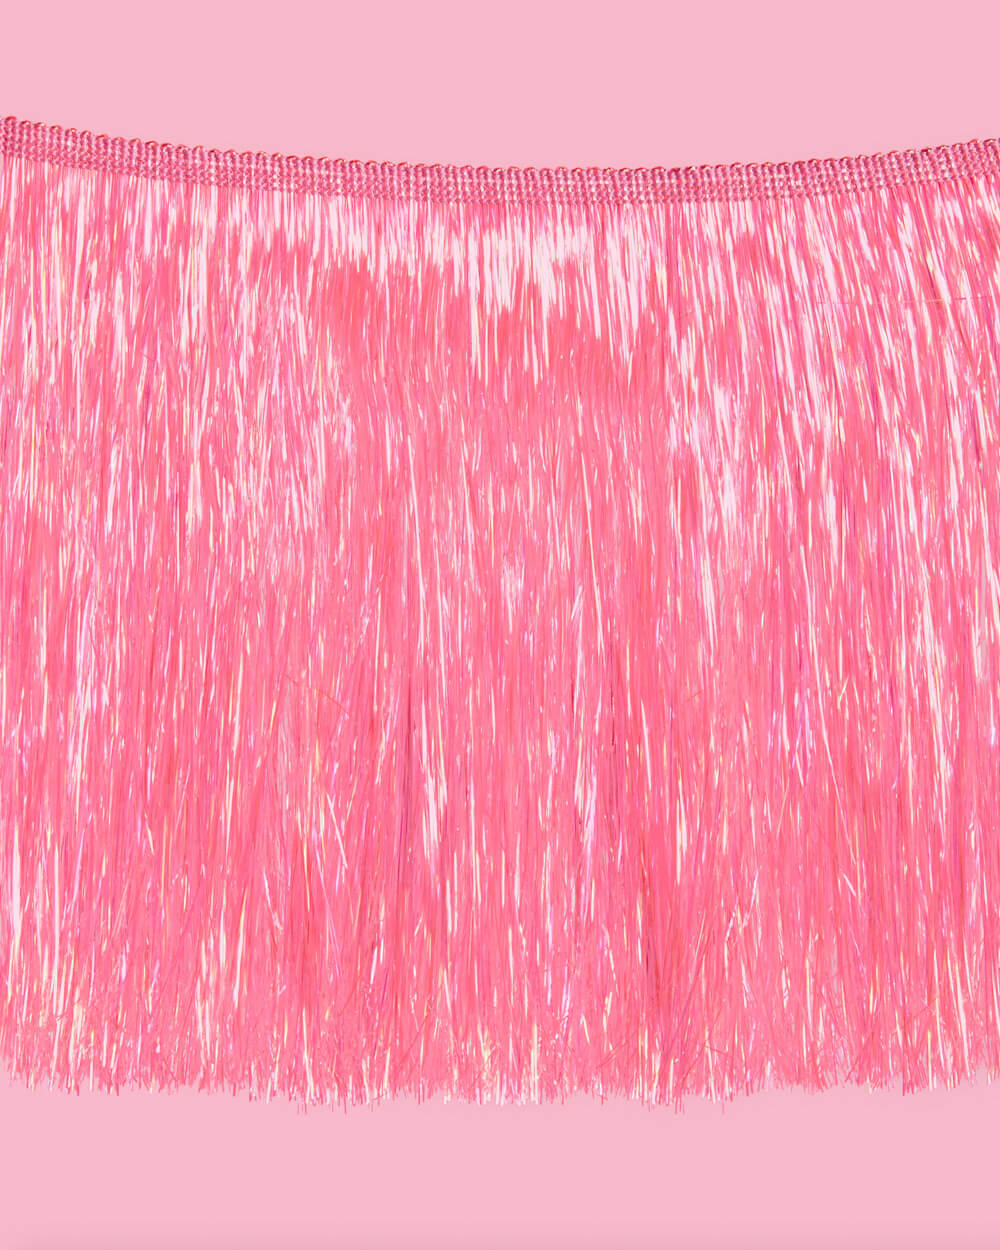 That's Hot Fringe - pink foil banner